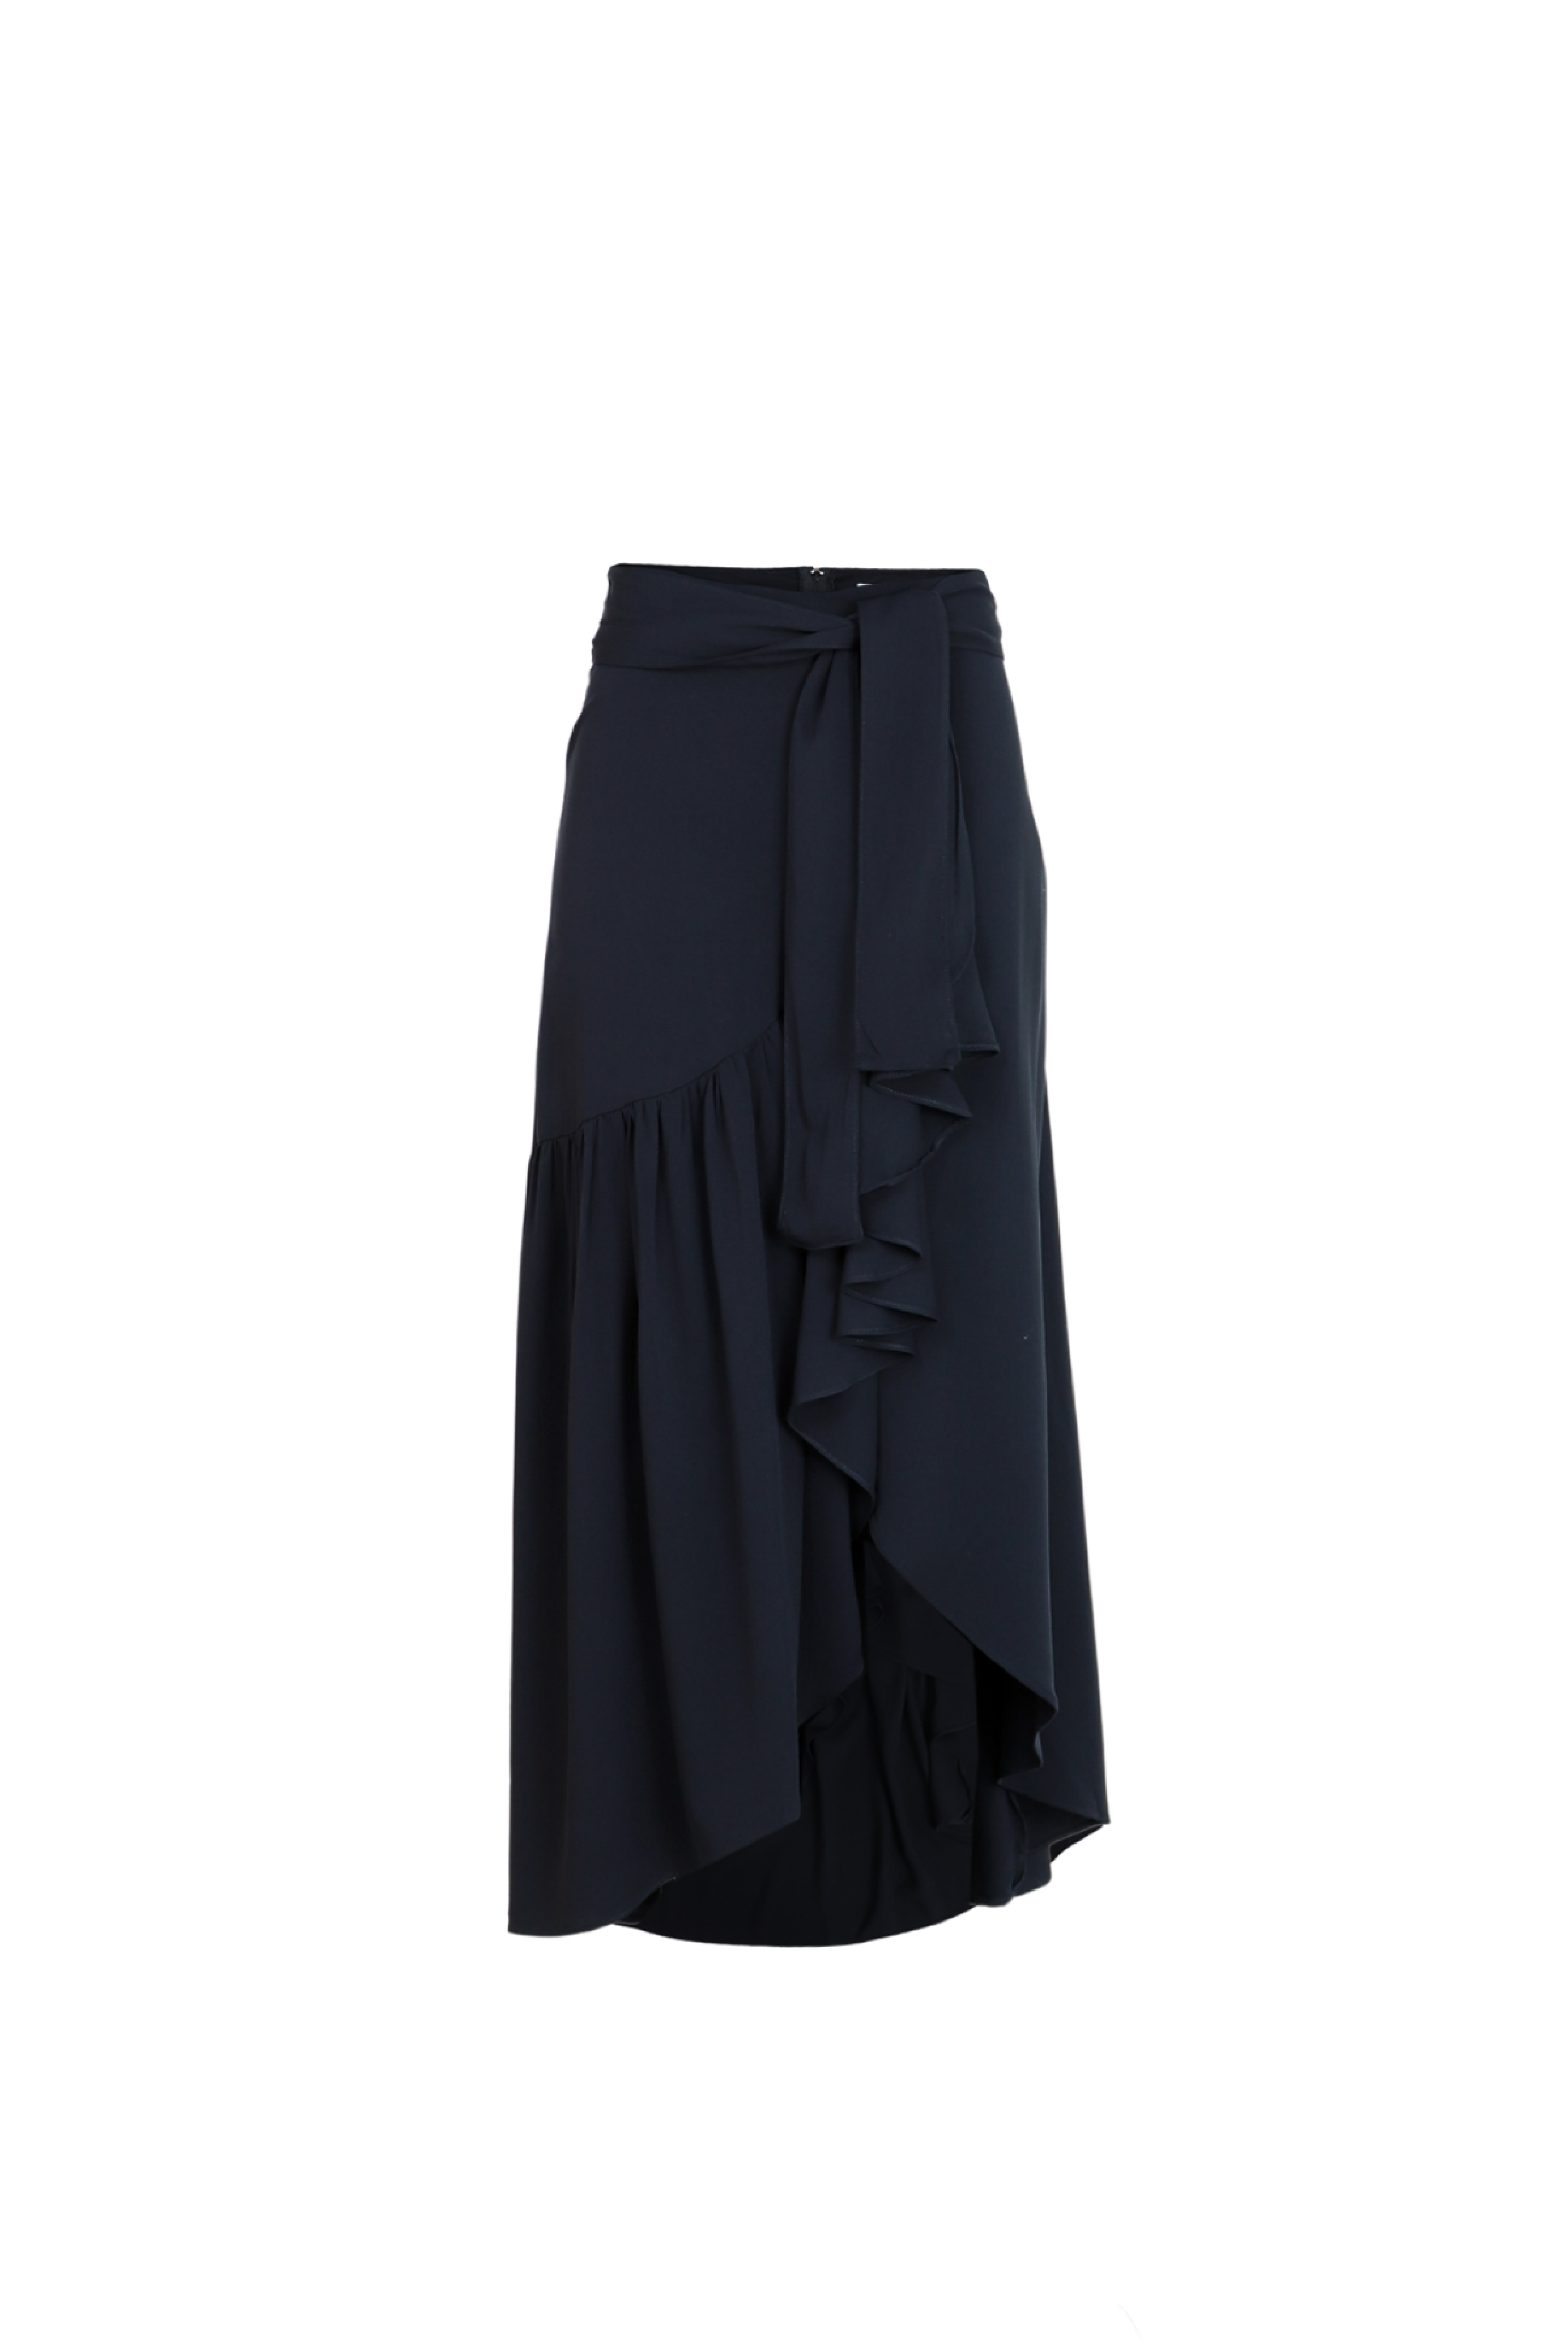 Falda mini en color negro